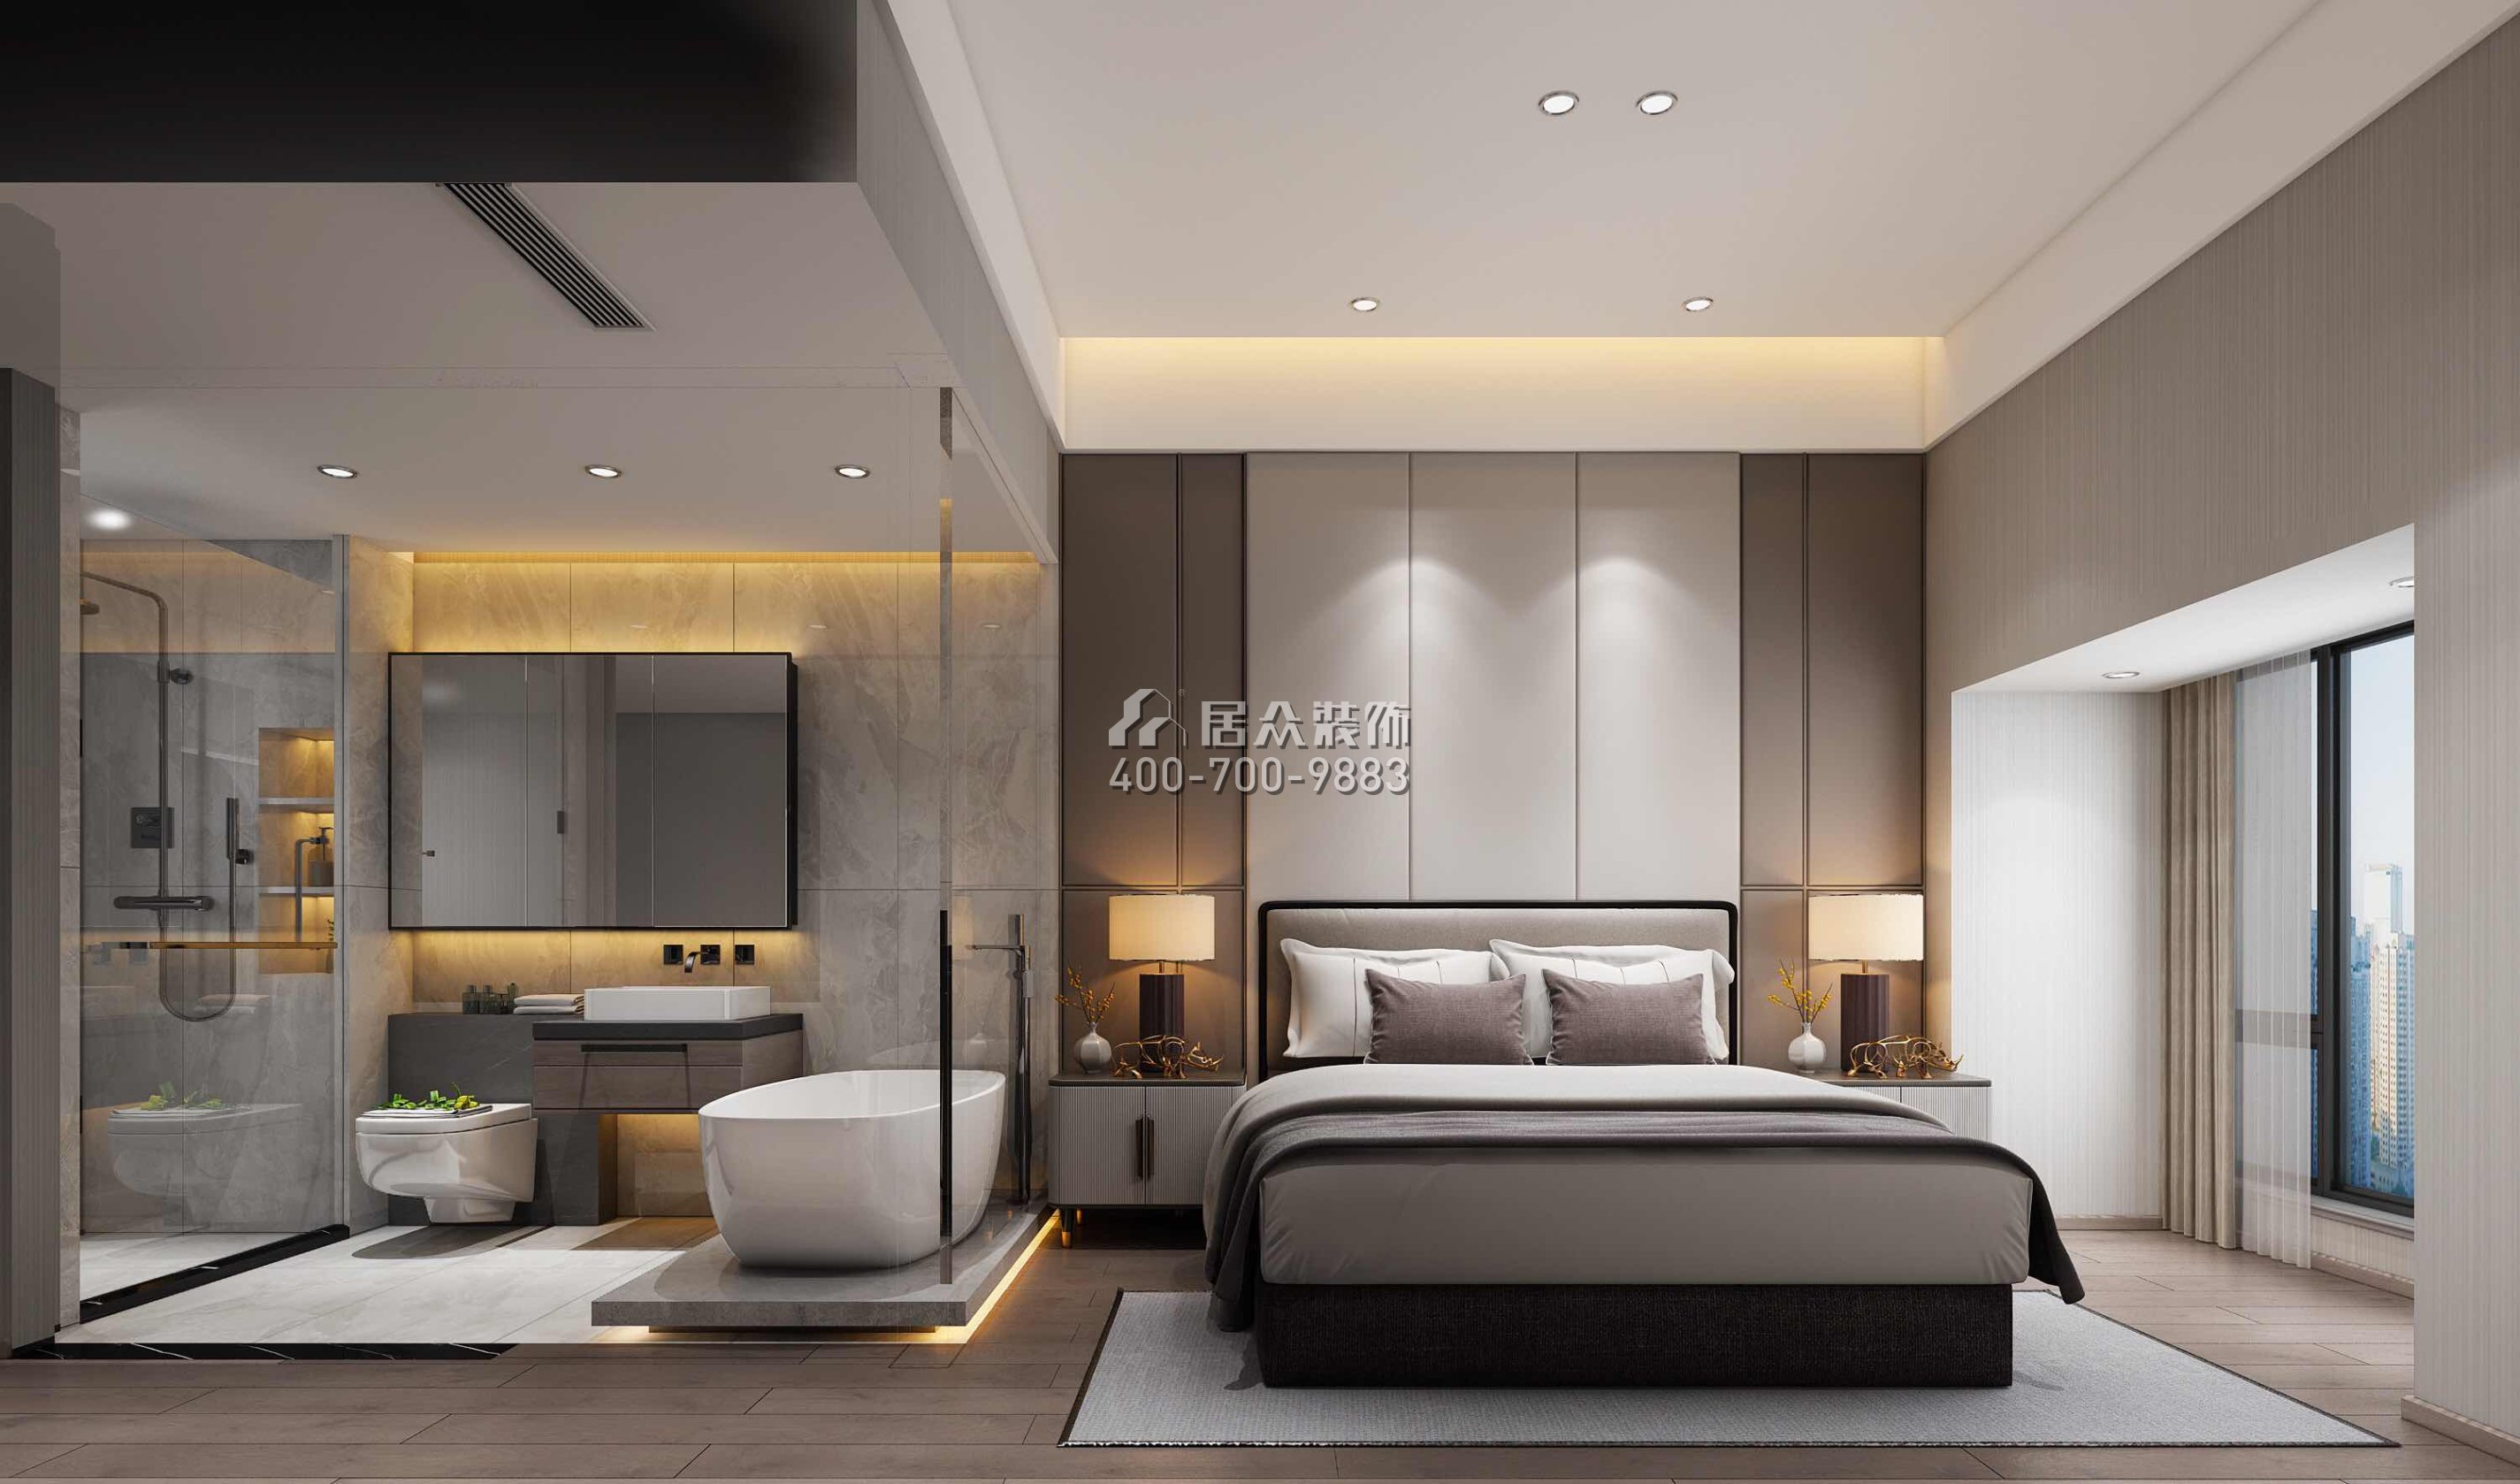 佳兆业城市广场220平方米现代简约风格复式户型卧室装修效果图